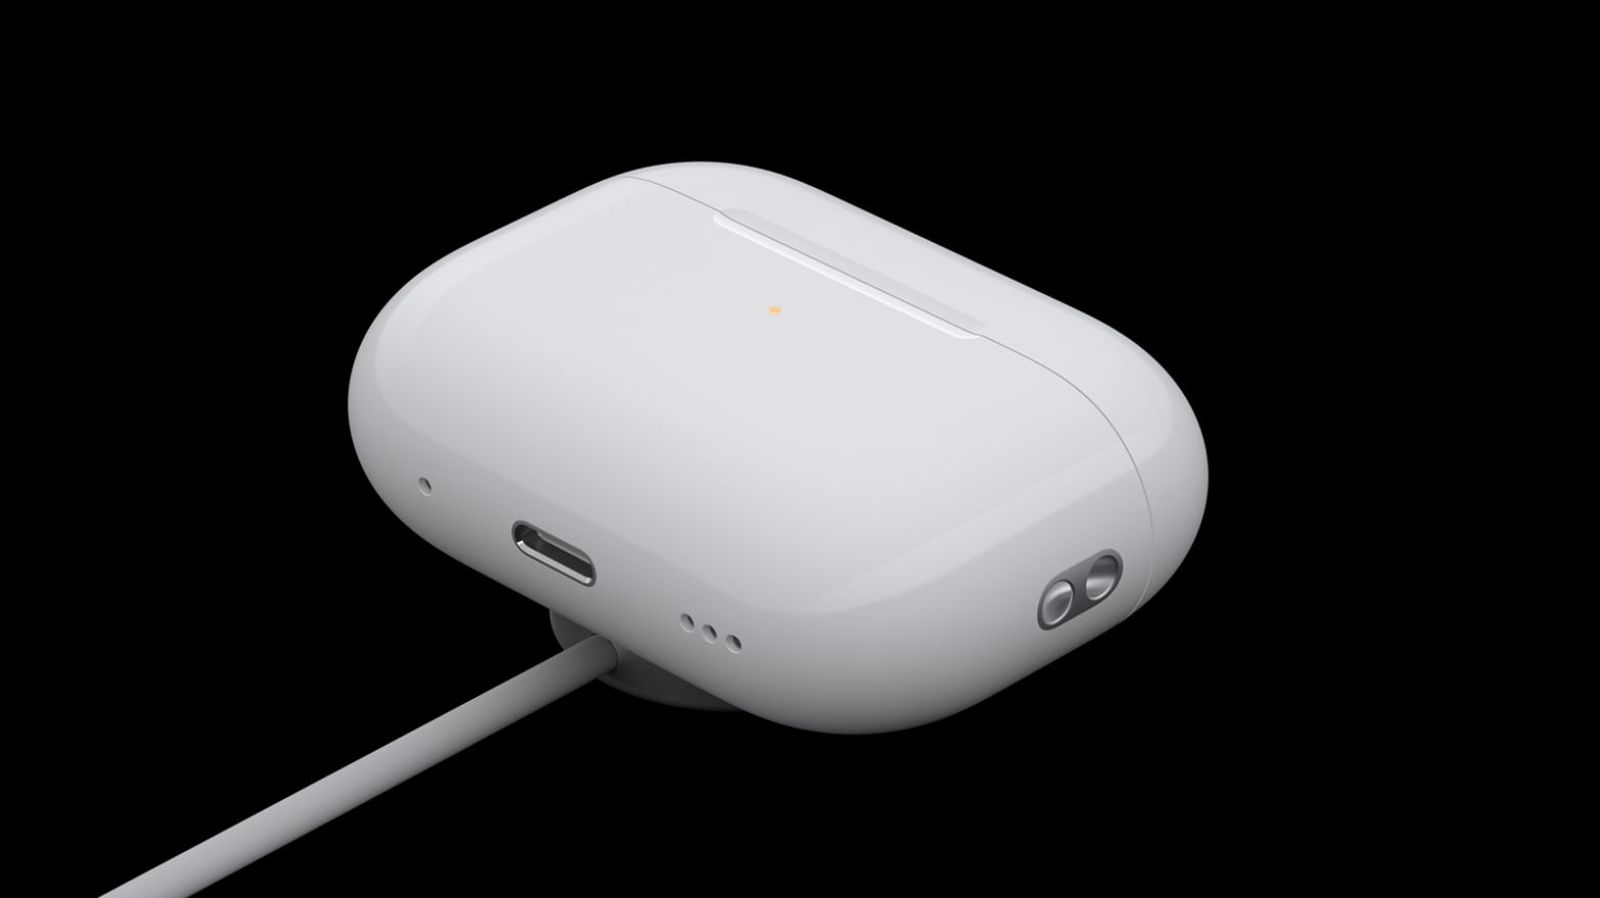 Depuis iPhoneIslam.com, étui de chargement sans fil blanc pour AirPods 4 avec voyant LED, connecté au câble de chargement, sur fond noir.